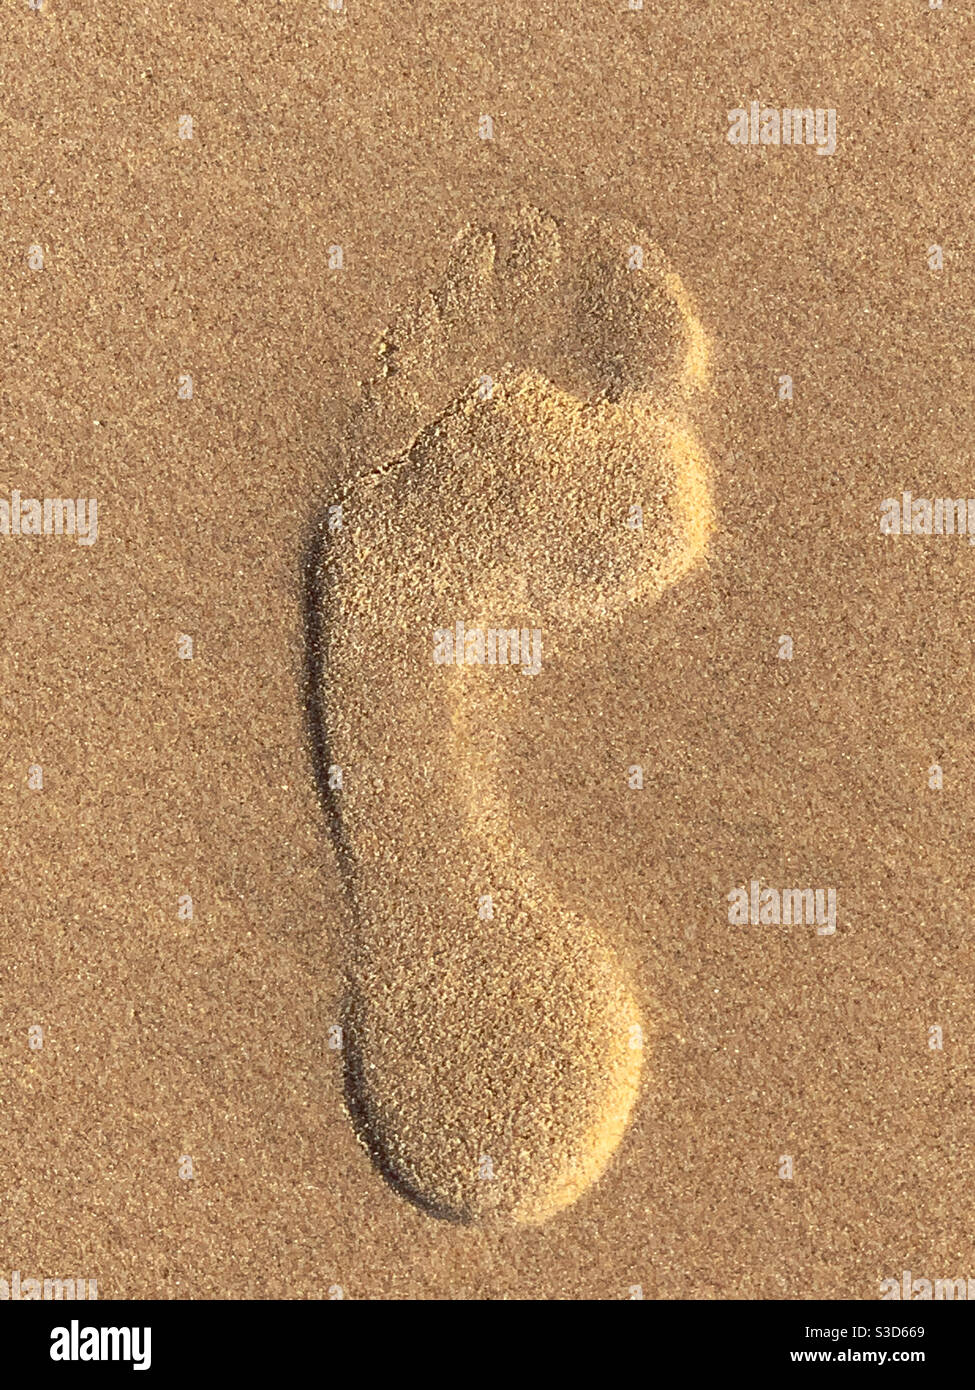 Footprint nella sabbia, piede sinistro. L'illusione ottica appare più alta quando è effettivamente impressa Foto Stock